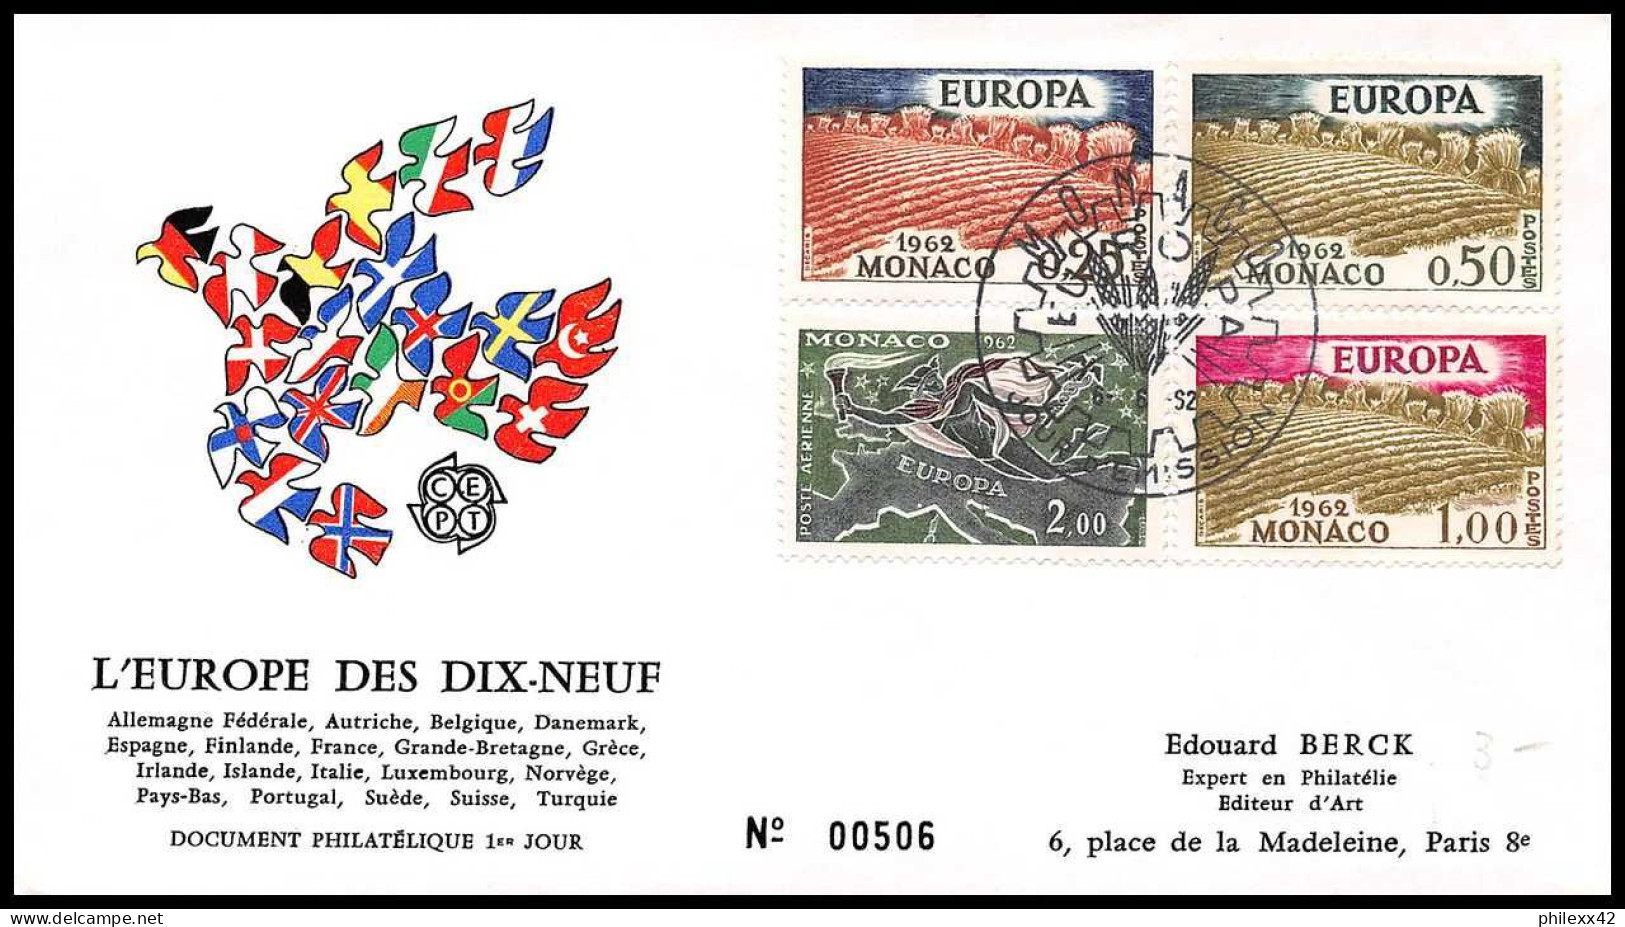 12903 Lot De 10 Fdc Premier Jour Europa 1965/1973 Fdc Premier Jour Monaco Lettre Cover - Verzamelingen & Reeksen